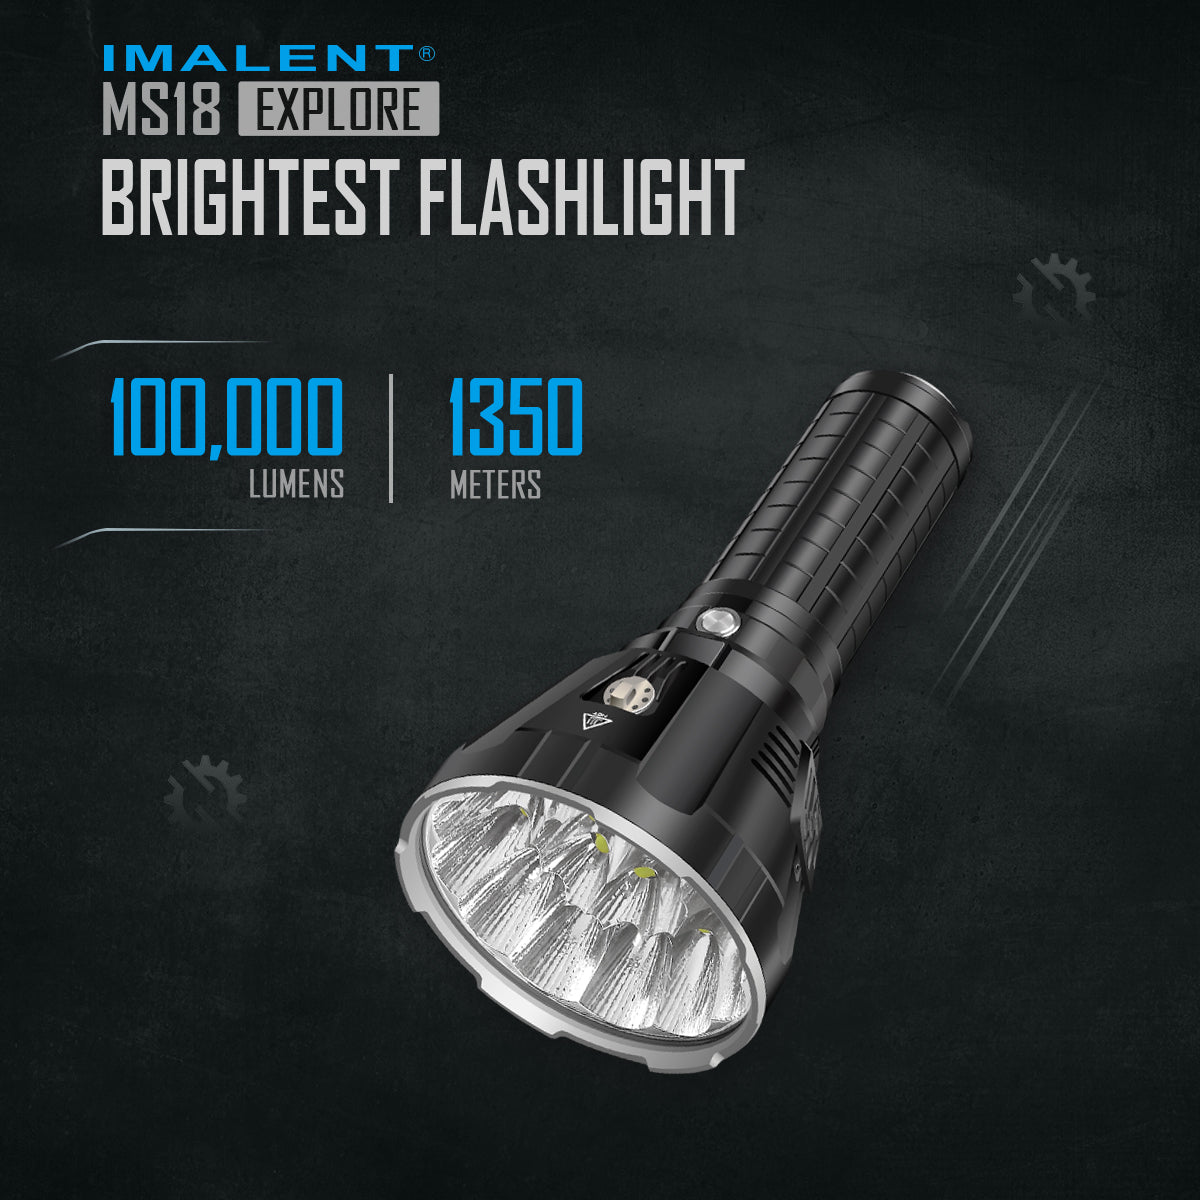 Lampe de poche LED Imalent MS18 de 100 000 lumens avec un maximum